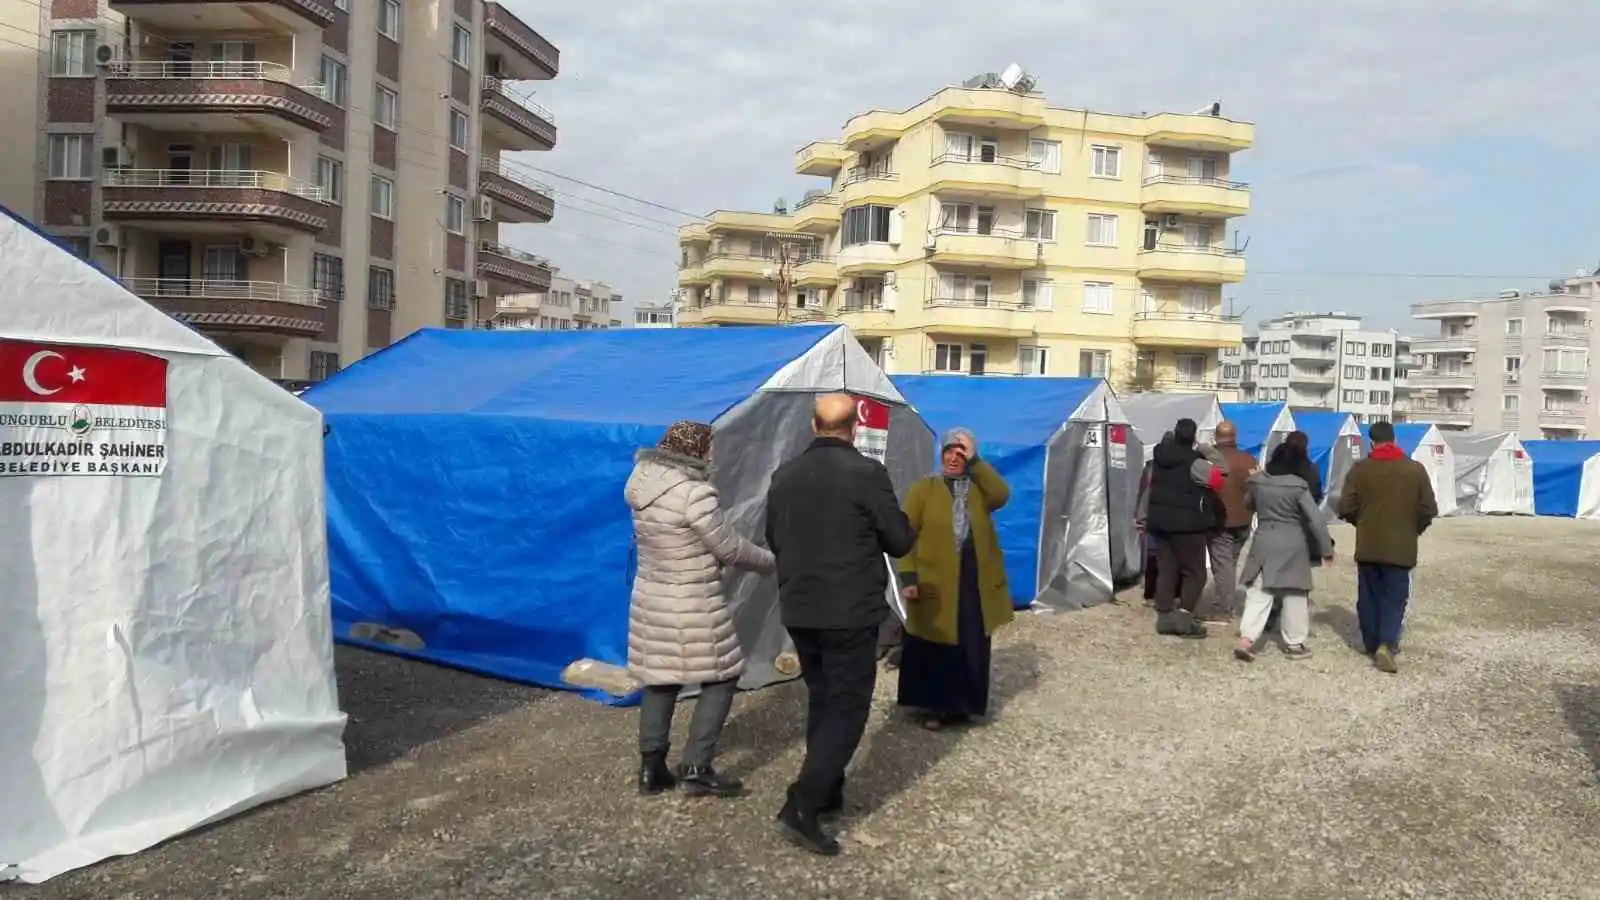 Sungurlu Belediyesi İskenderun'da çadır kent kurdu
